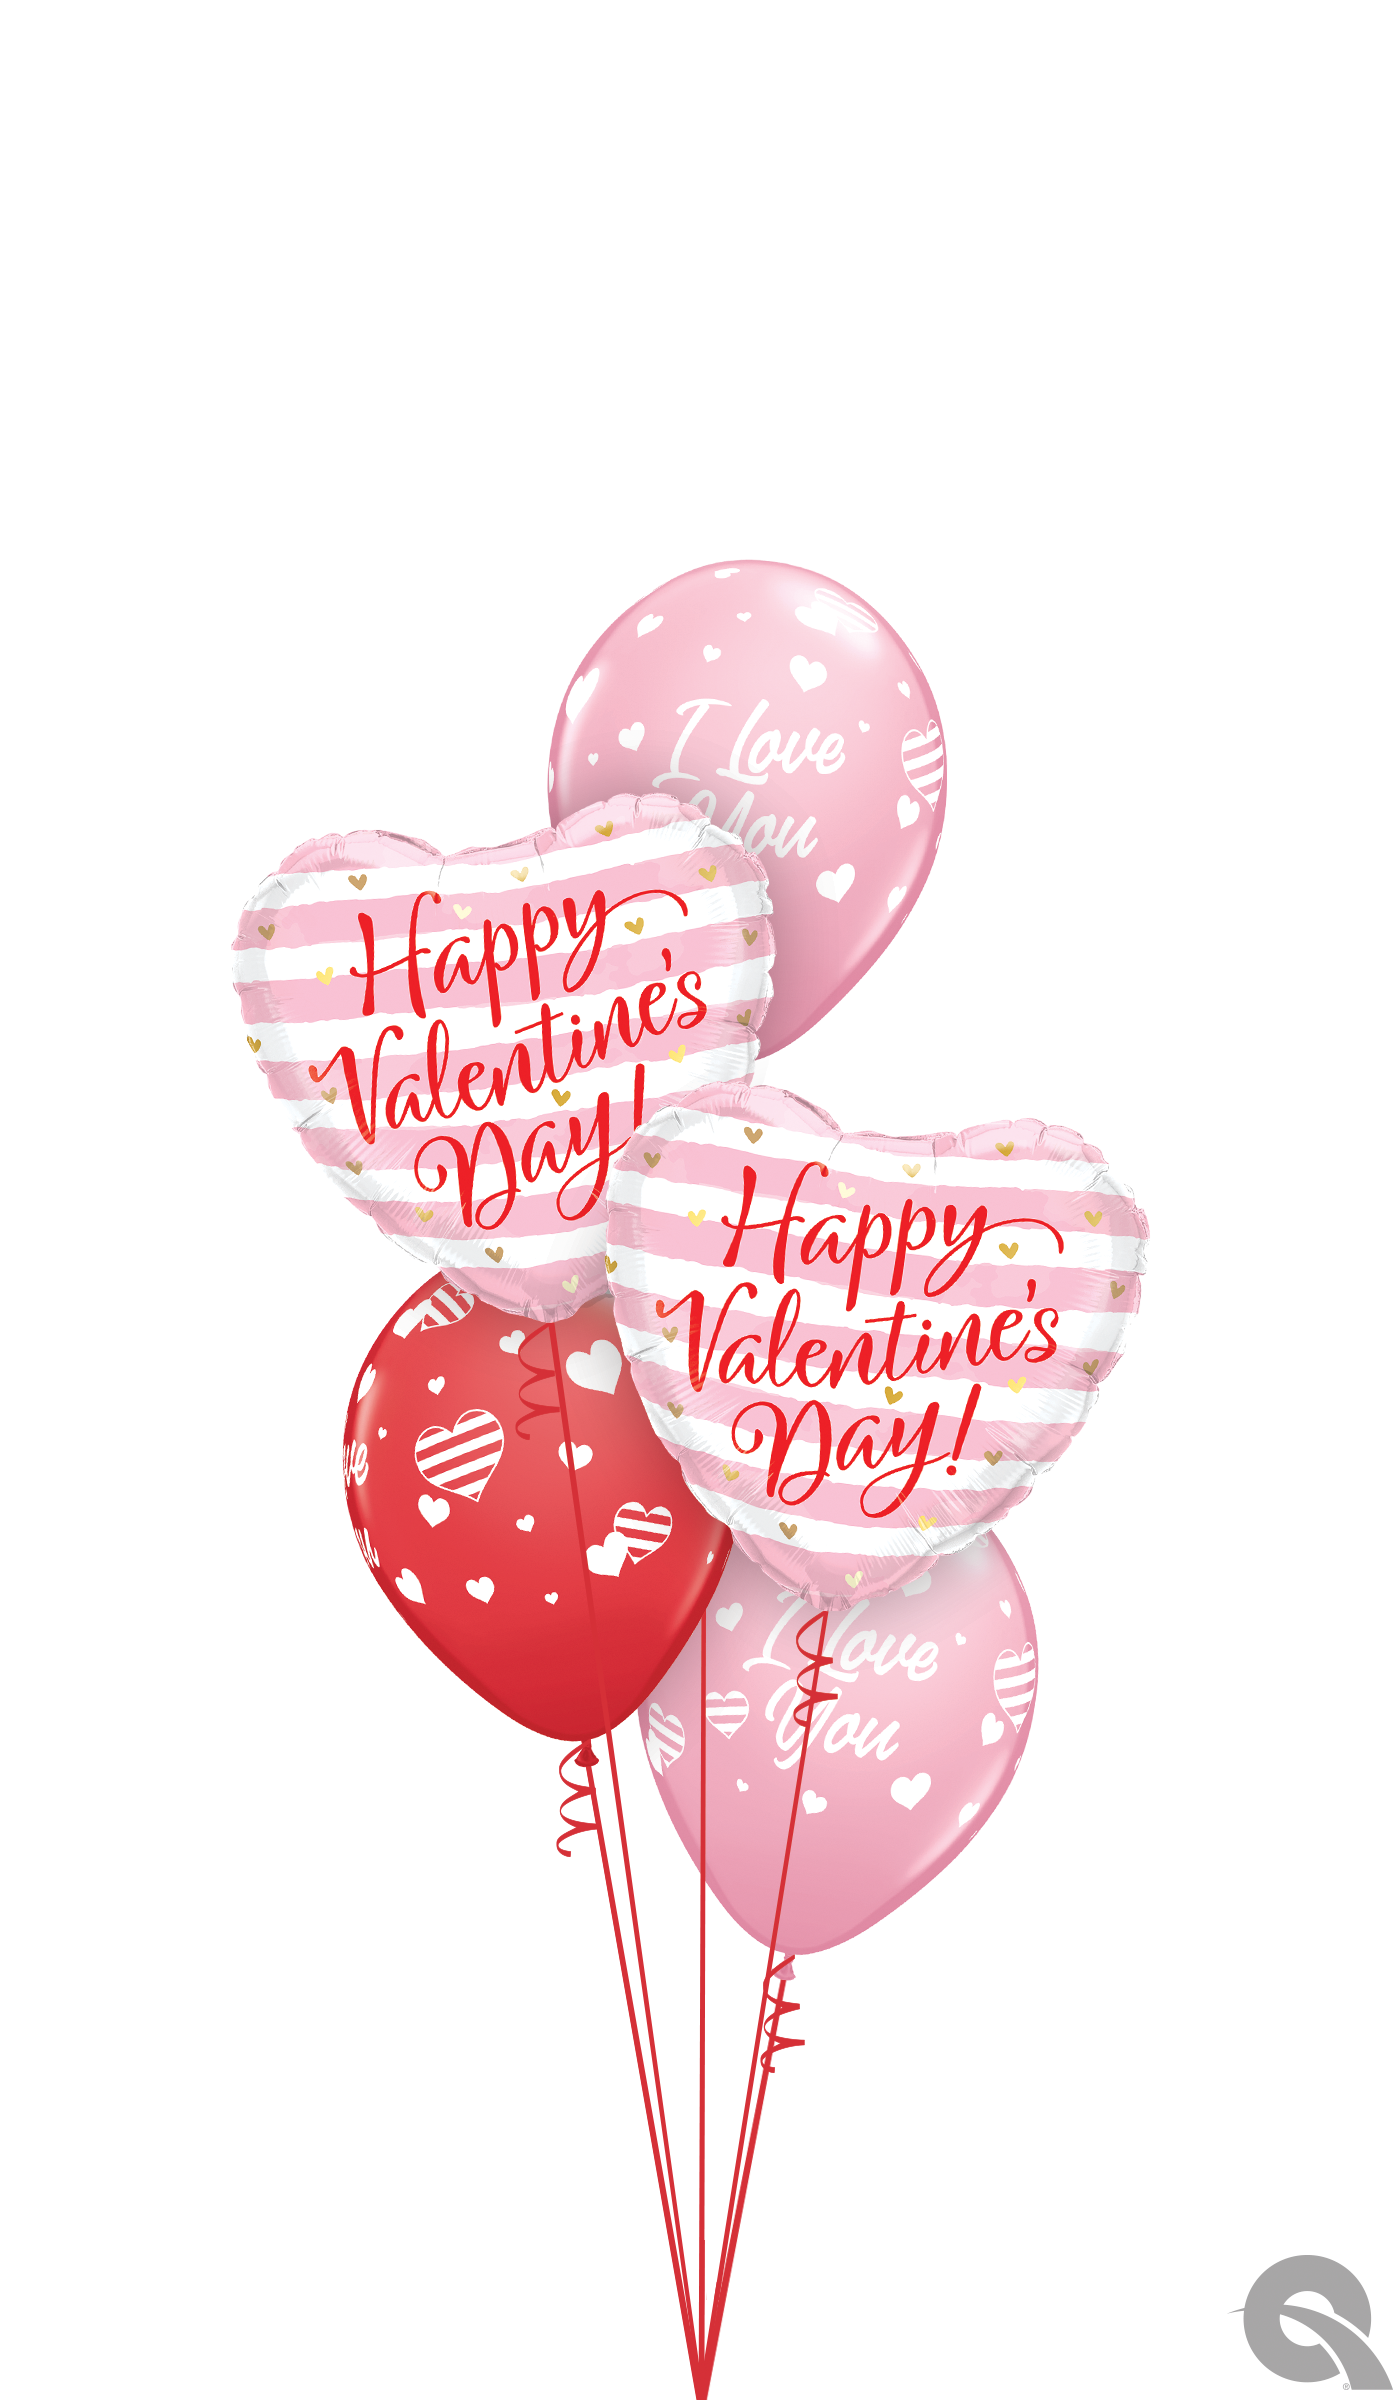 Artist Choice Valentine’s Day Balloon Bouquet